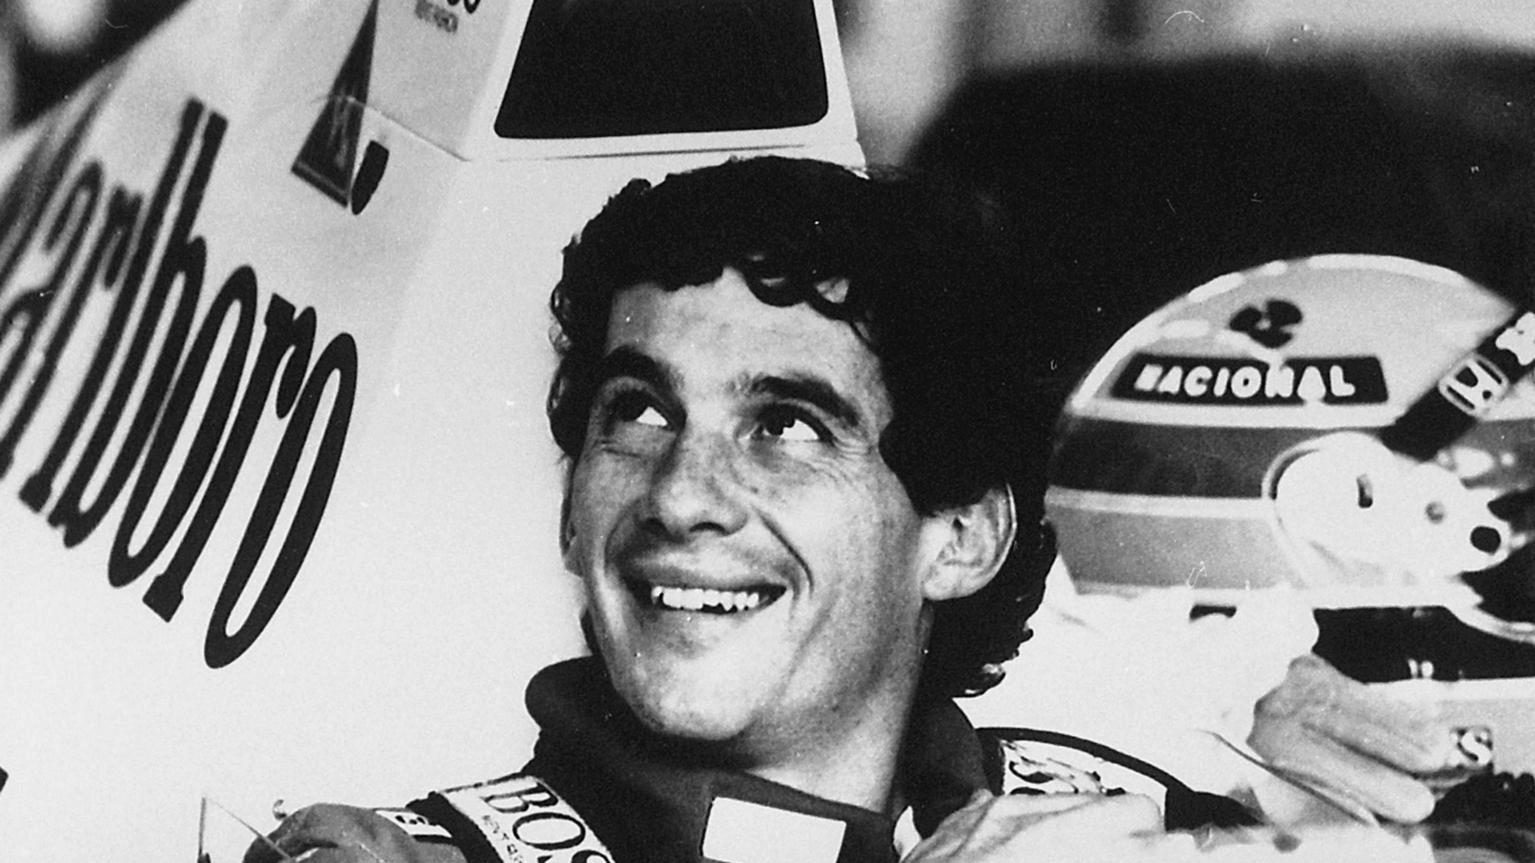 Senna, la leggenda tra aneddoti e immagini. L’omaggio al campione scomparso 30 anni fa